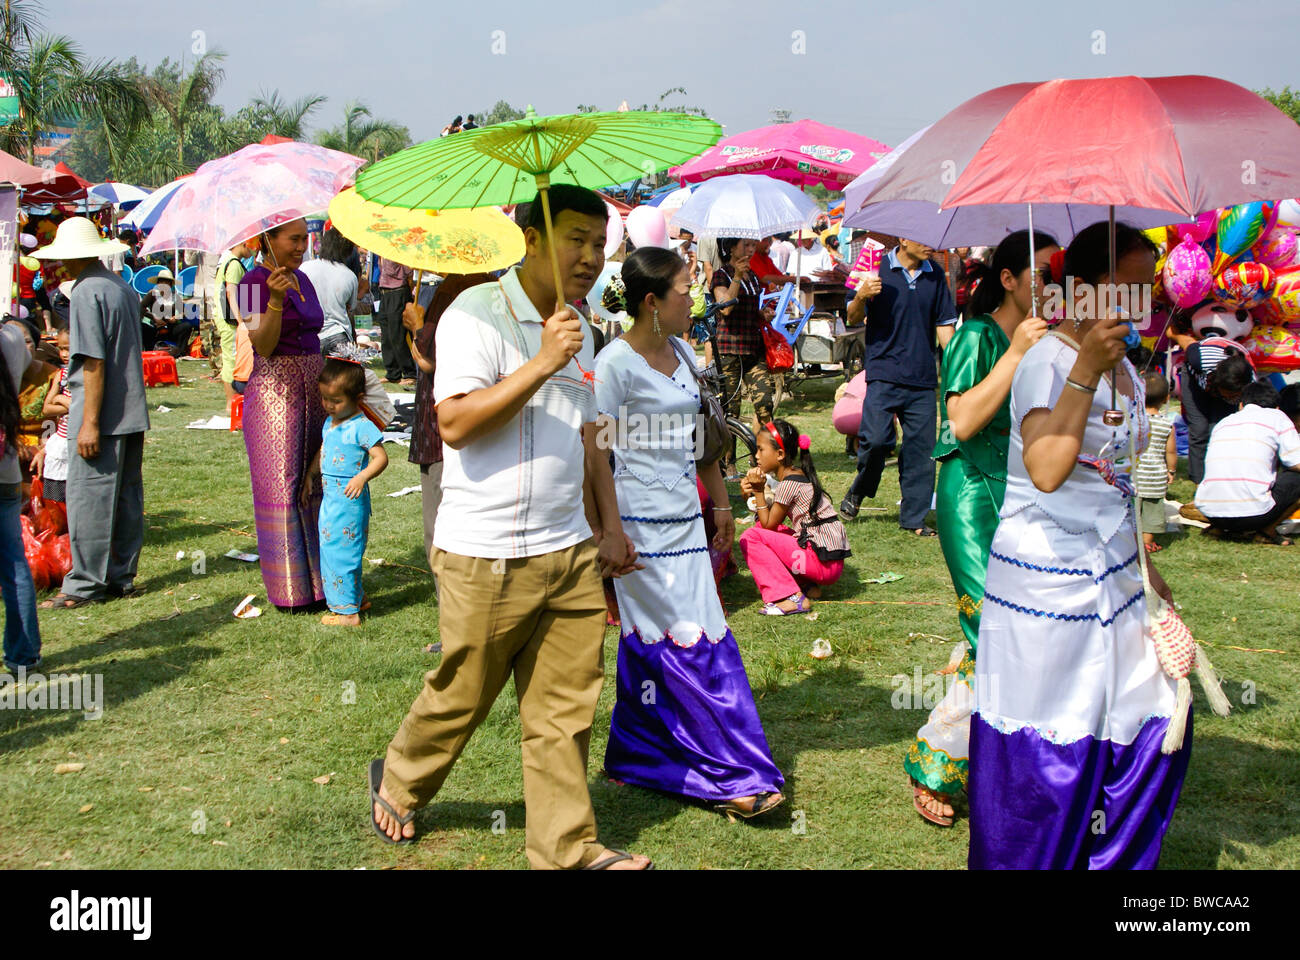 Dai people at festival, Xishuangbanna, Yunnan, China Stock Photo